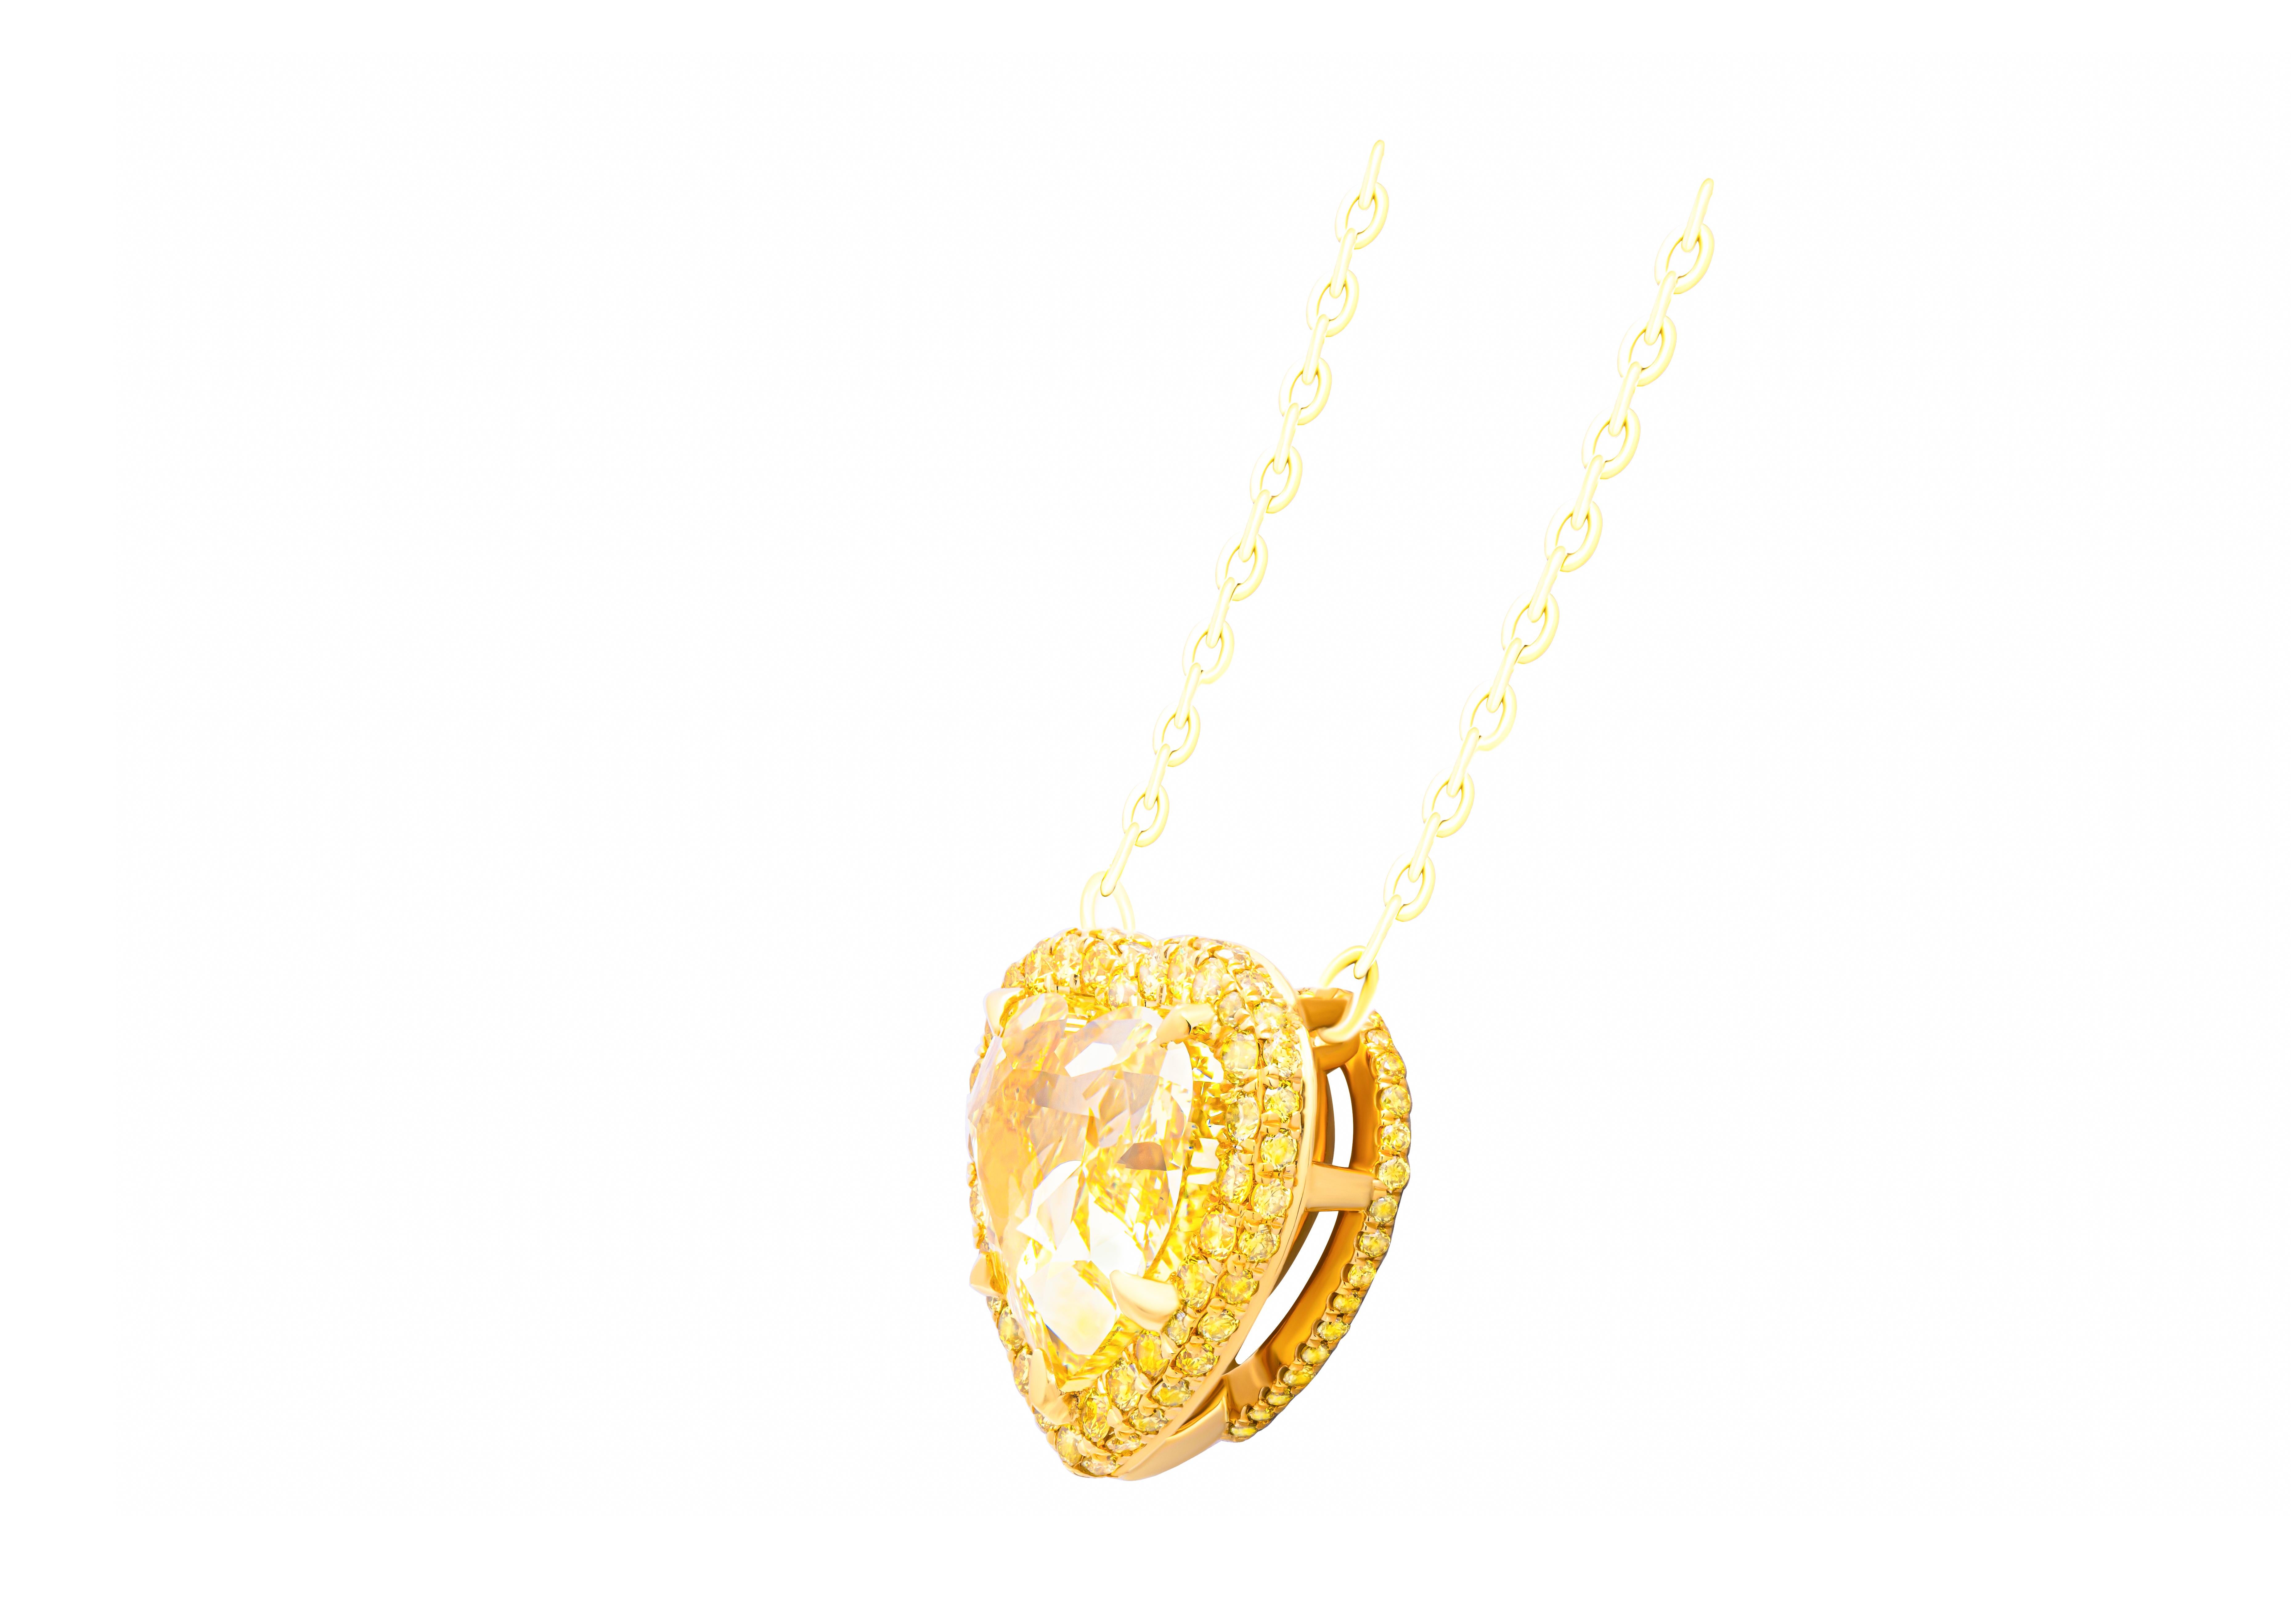 Wir präsentieren unseren exquisiten Anhänger in Herzform aus glänzendem 18 Karat Gelbgold mit einem atemberaubenden Herzstück - einem 6,03 Karat schweren Fancy Intense Yellow Heart Shape Diamanten, der vom GIA mit der Identifikationsnummer